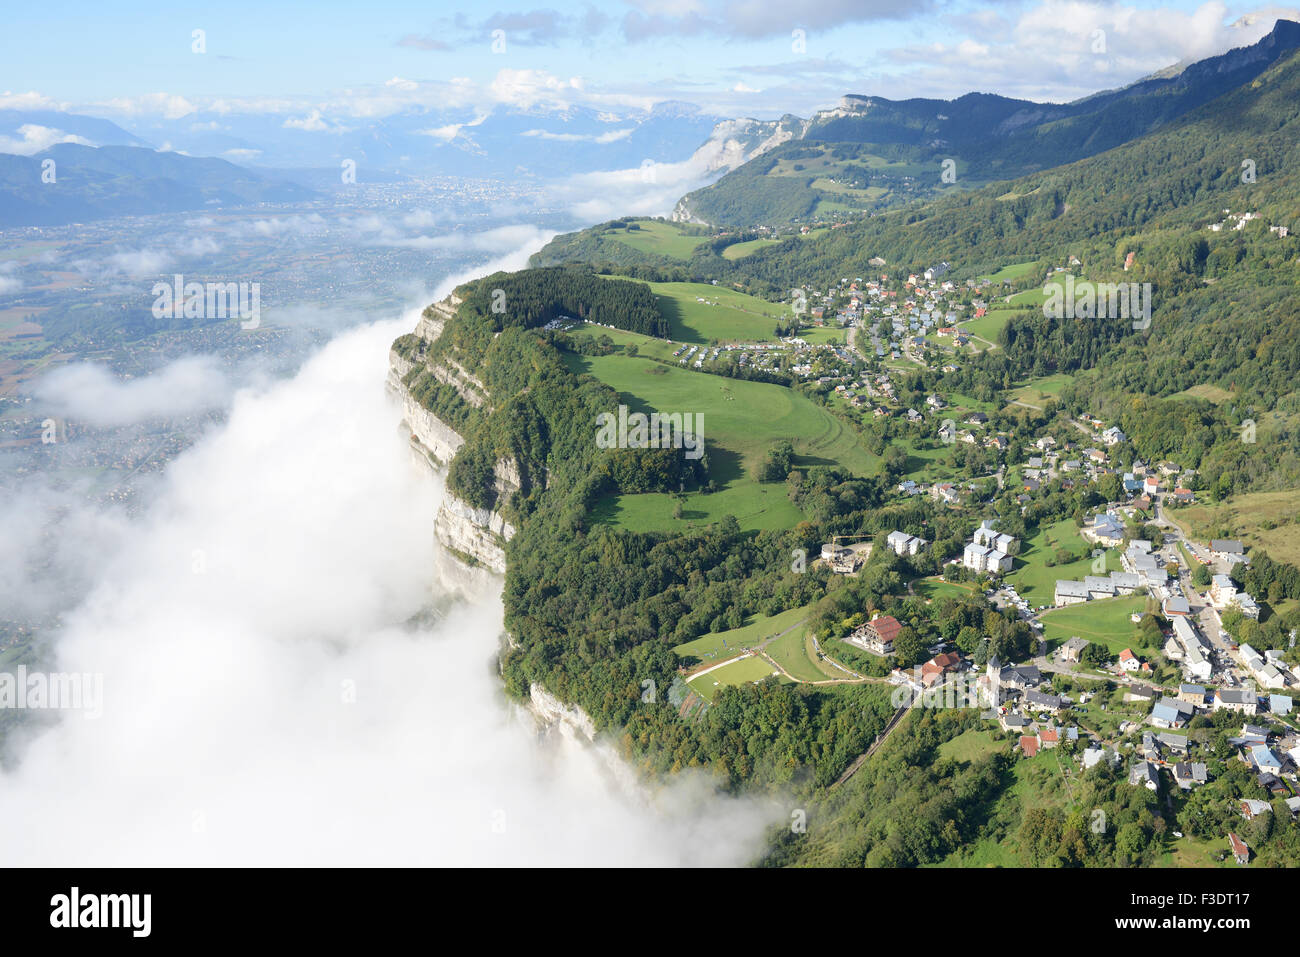 VUE AÉRIENNE.Village au sommet d'une falaise au-dessus d'une ceinture de  nuages accrochés à des falaises vertigineuses.Saint-Hilaire-du-Touvet,  Isère, Auvergne-Rhône-Alpes, France Photo Stock - Alamy